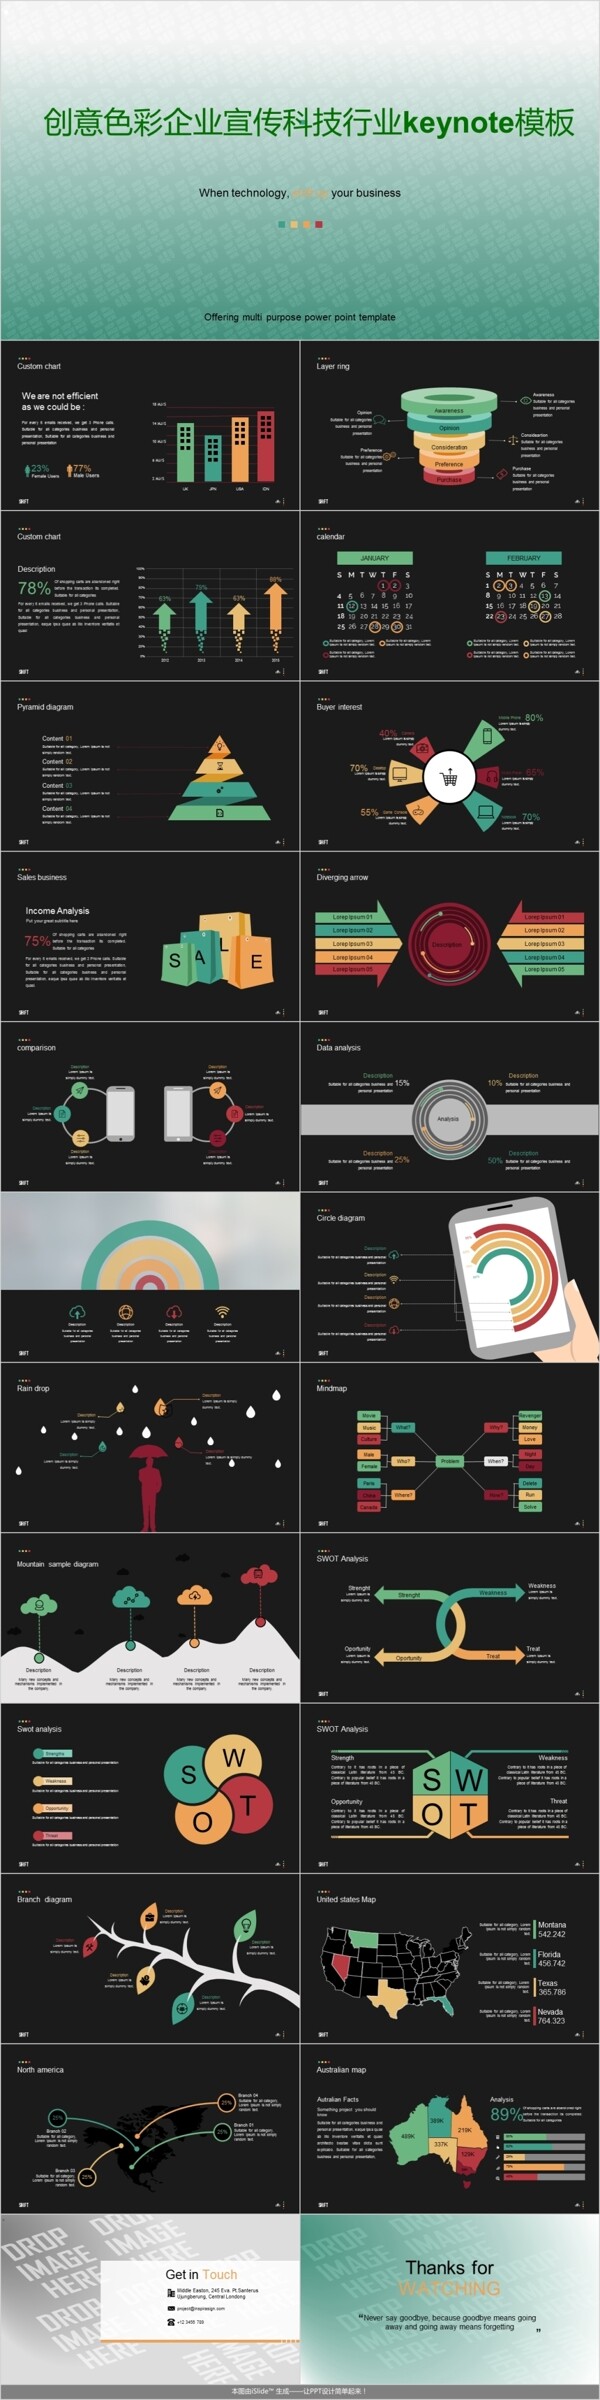 创意色彩企业宣传科技行业keynote模板6